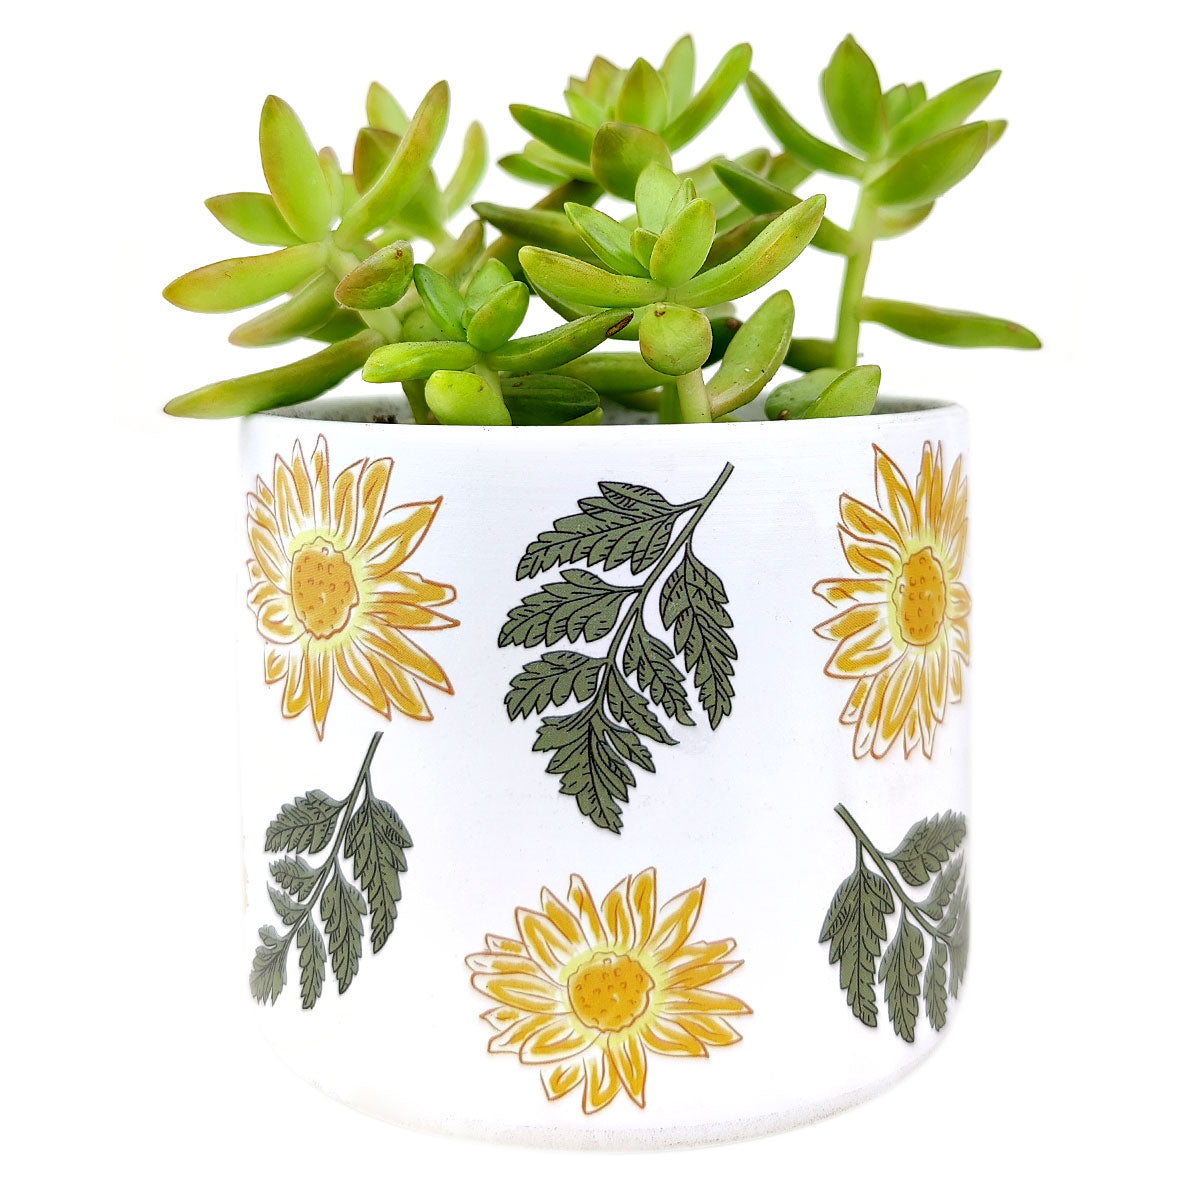 Sunflower Pot for sale, Ceramic Pot for succulents and flowers, Modern style flower pot for sale, Succulent gift decor ideas